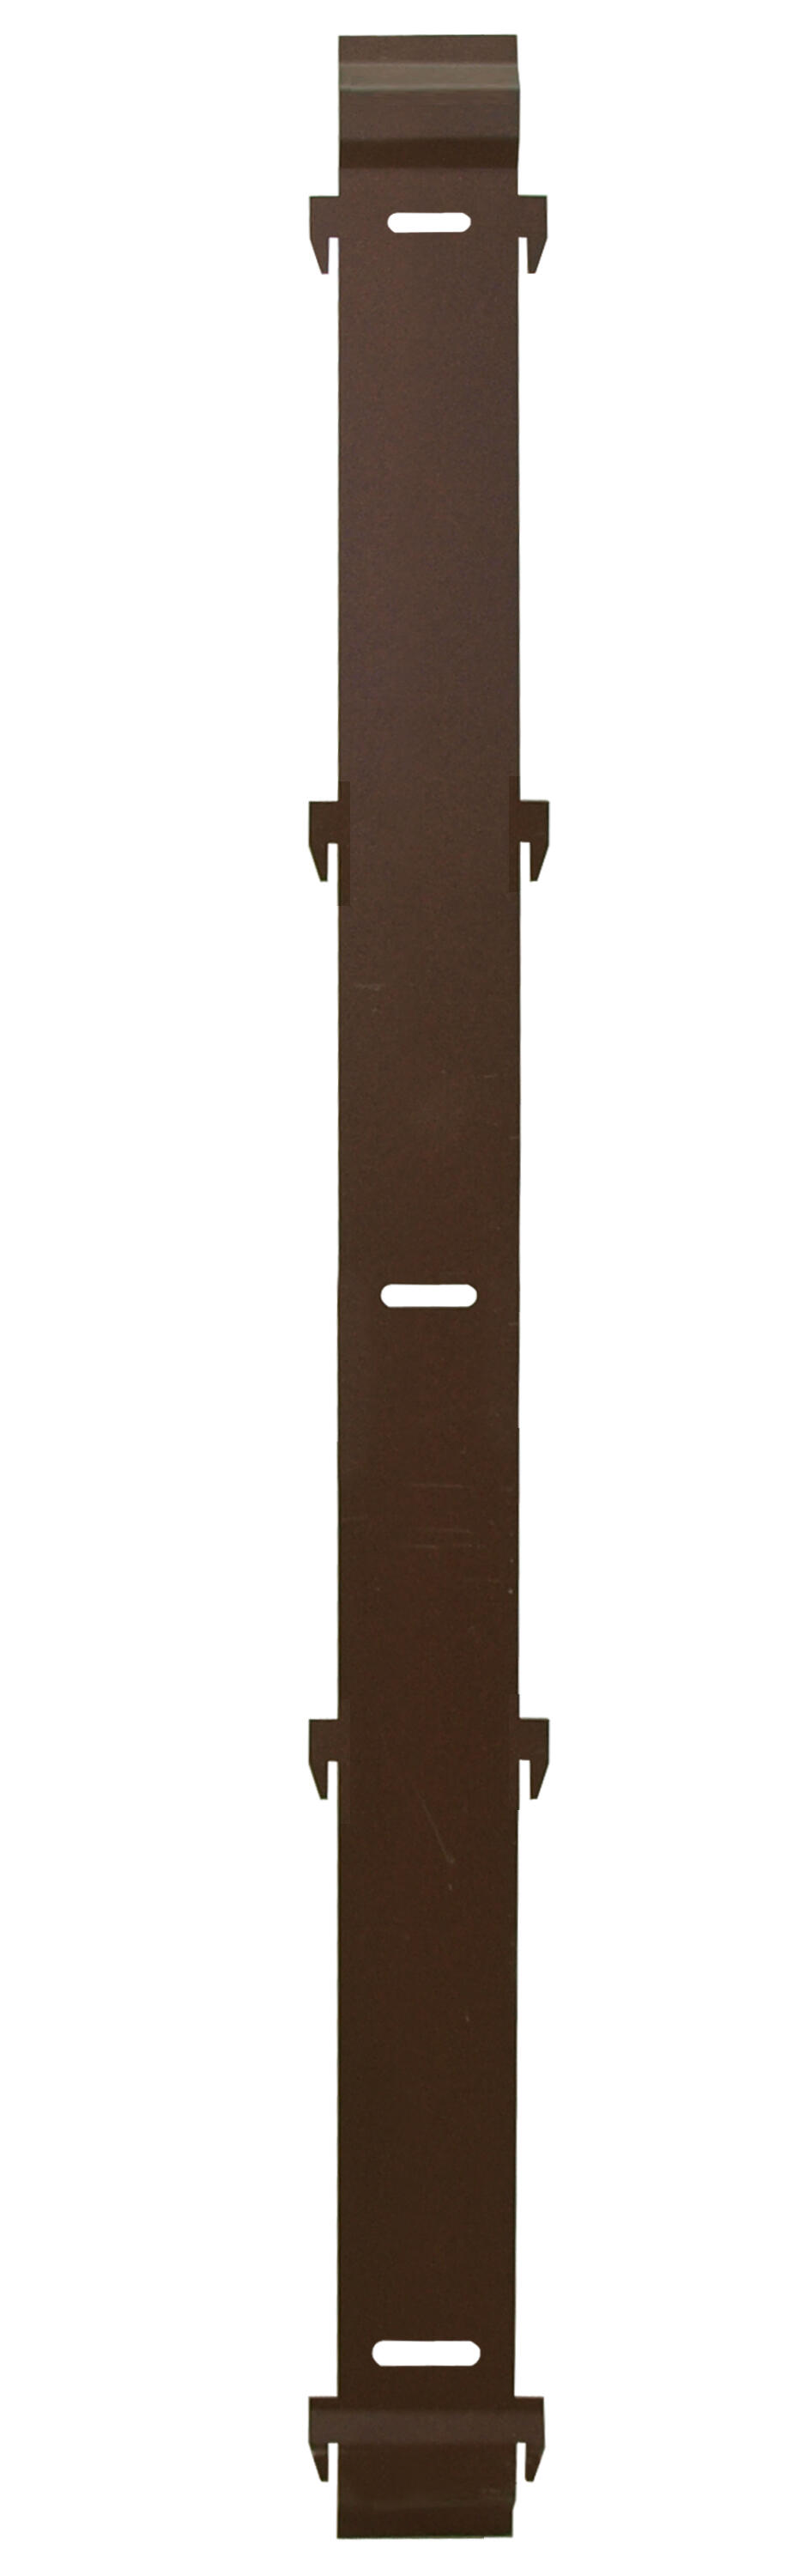 Panel remate valla acero galvanizado ciego marrón 144x10 cm